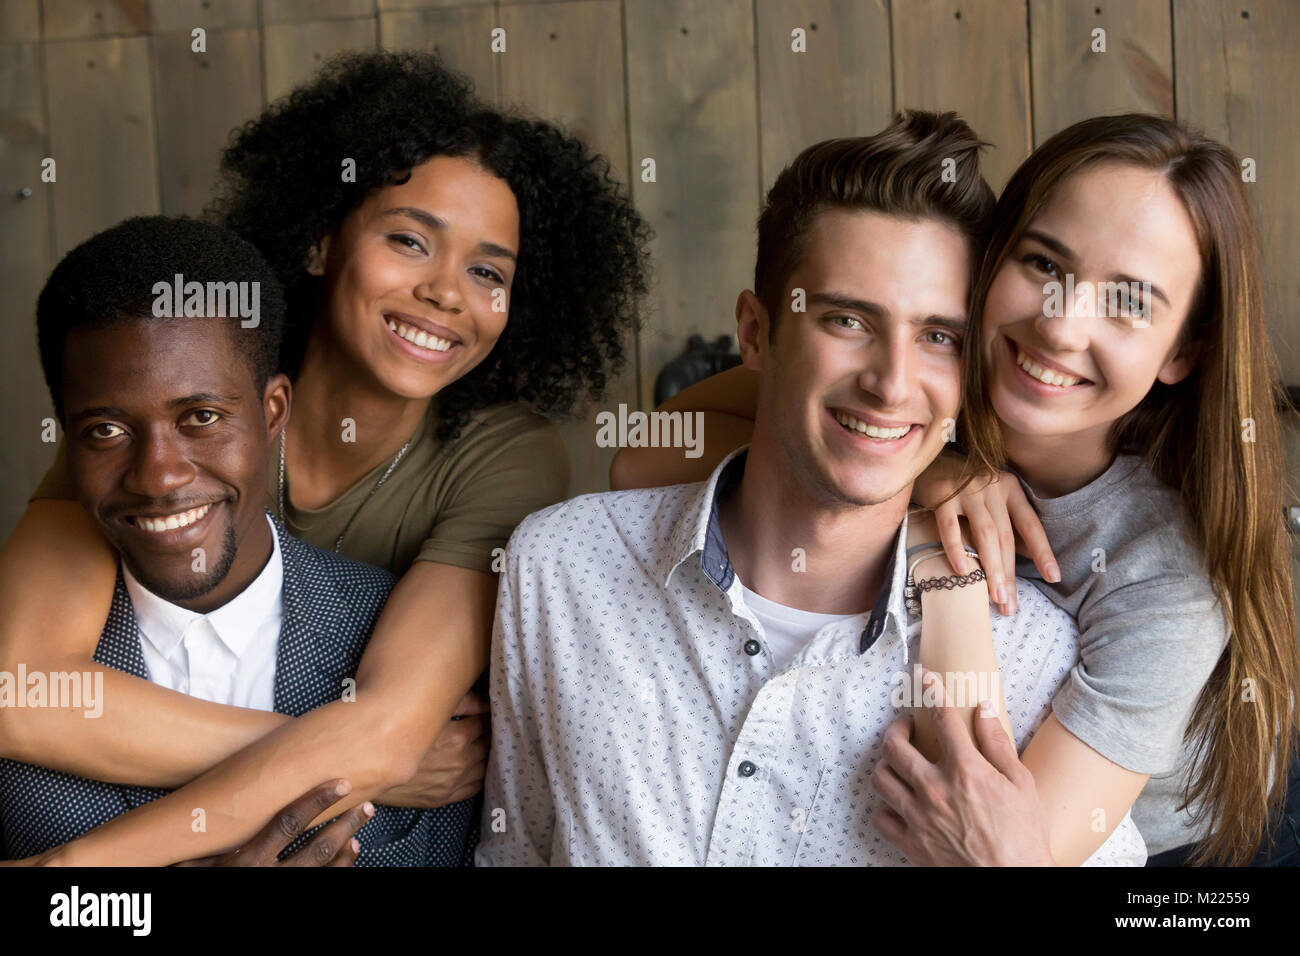 Deux d'Afrique et de race blanche des couples adoptant looking at camera, p Banque D'Images